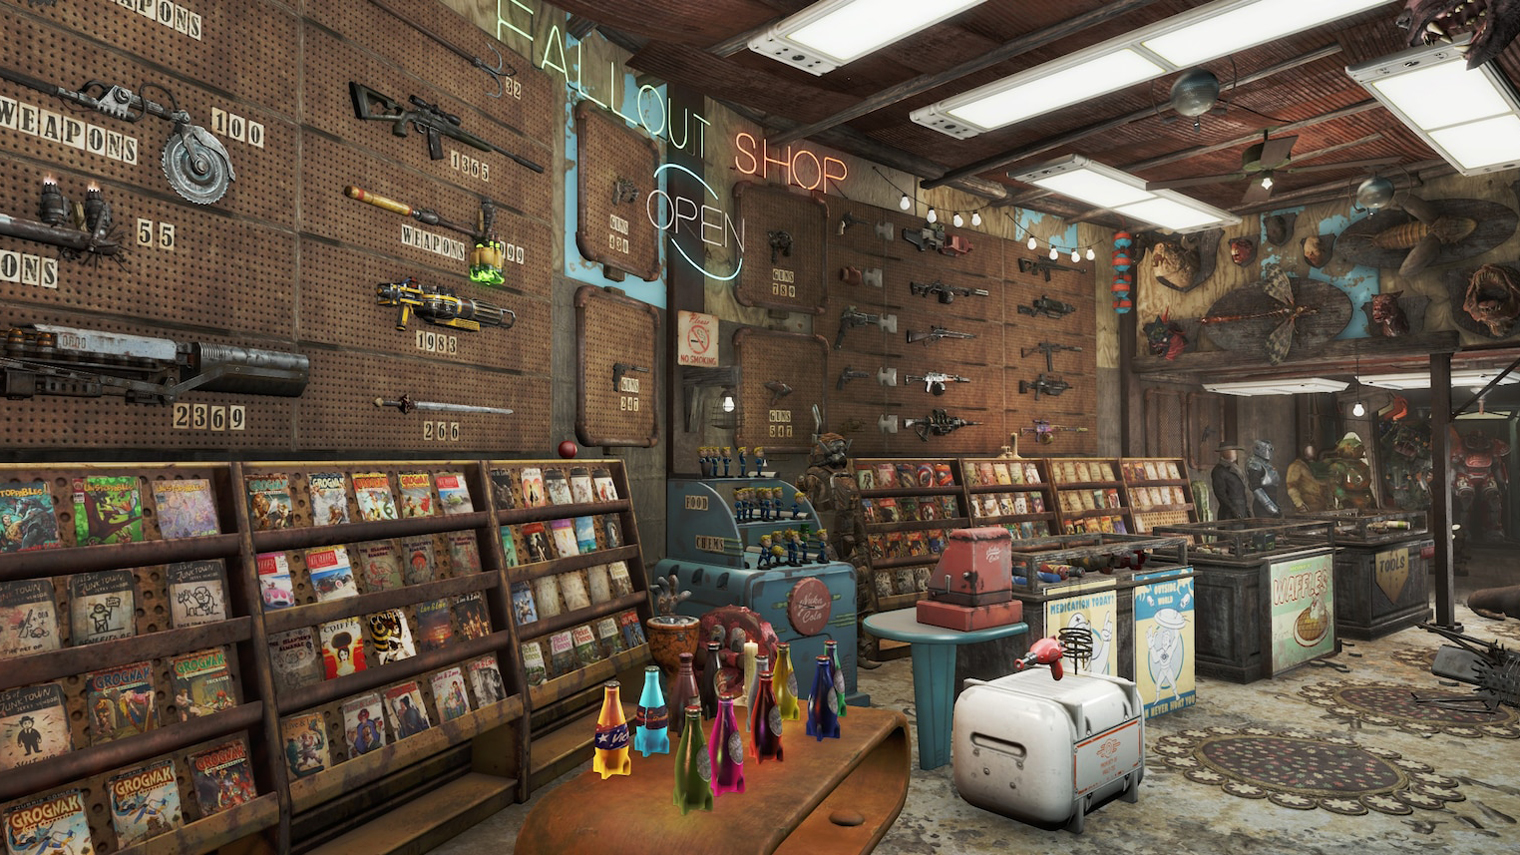 В Fallout 4 можно даже открыть свой магазинчик, но на расстановку предметов придется потратить немало времени. Кадр: Bethesda Softworks